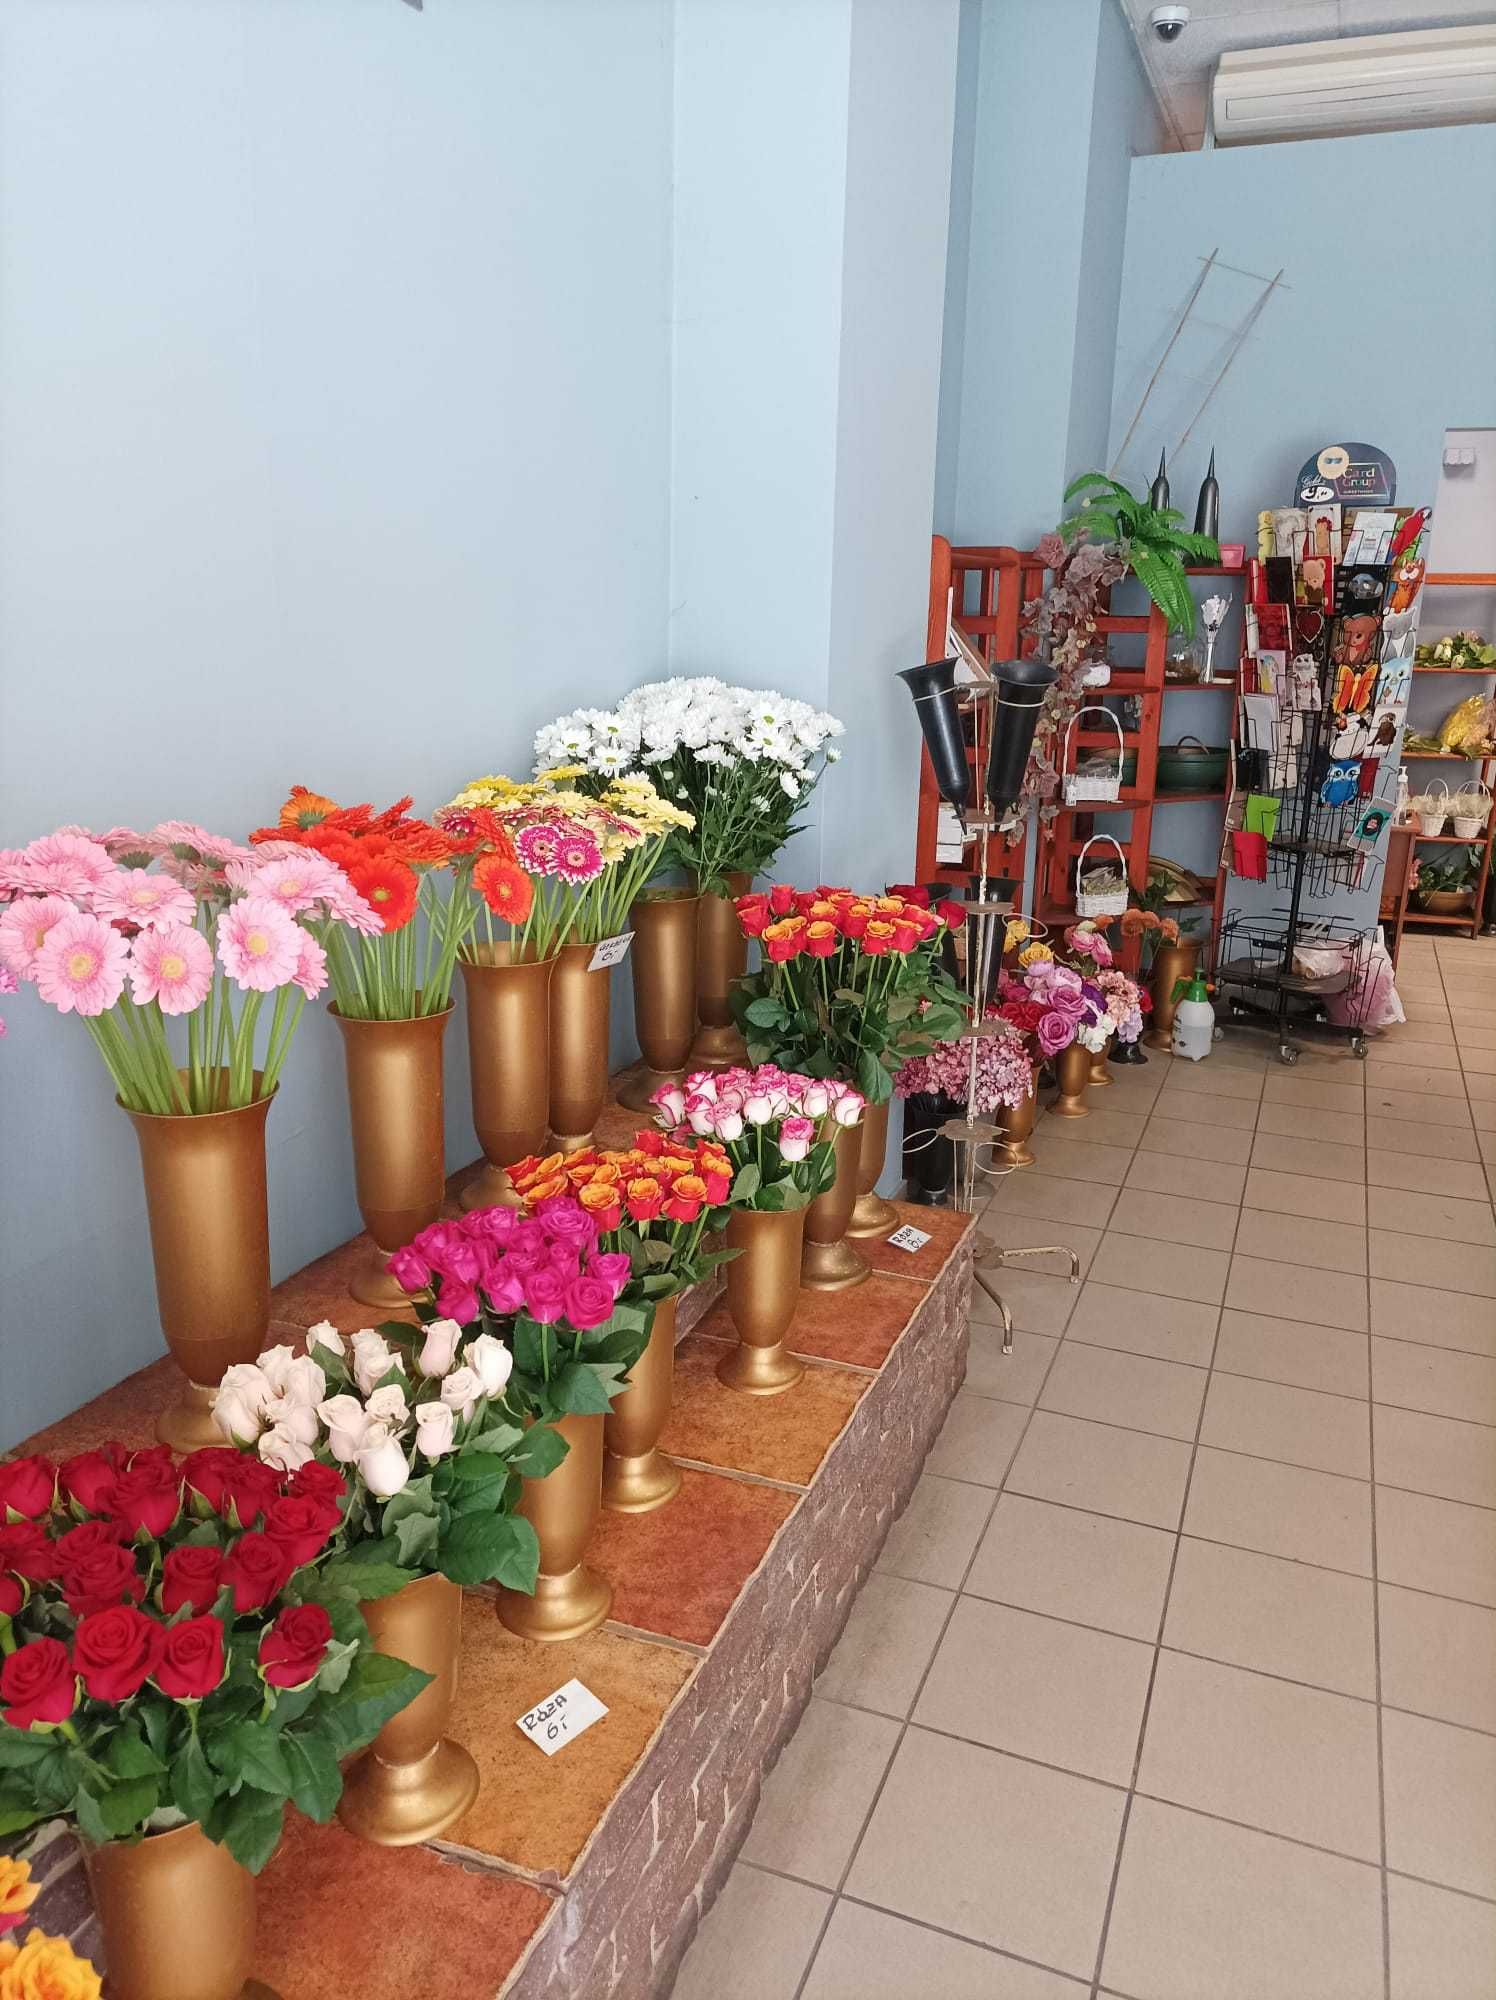 Sprzedam wyposażenie kwiaciarni z możliwością przejęcia lokalu - Bytom